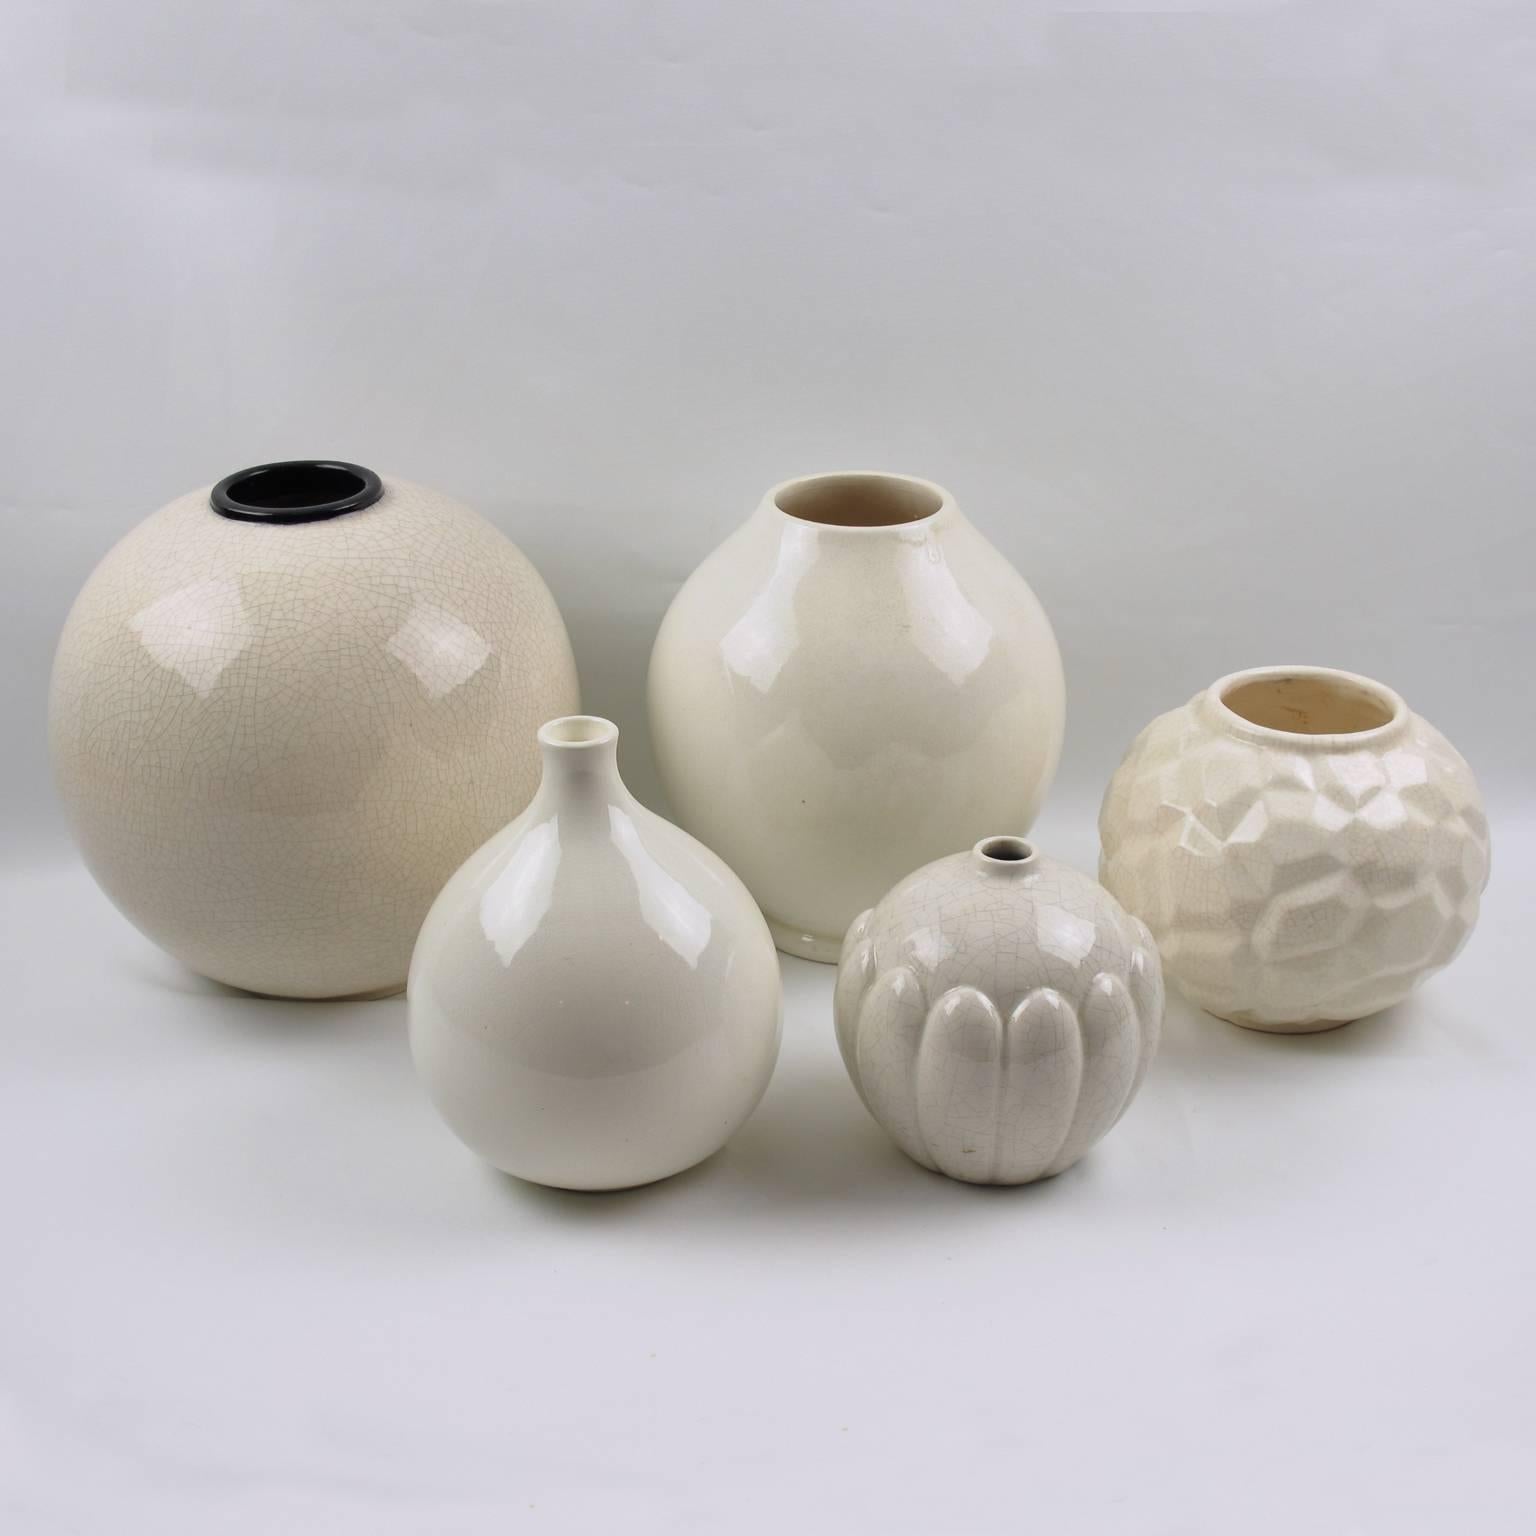 Saint-Clement France Signed Art Deco Modernist Crackle Glaze Ceramic Vase 1